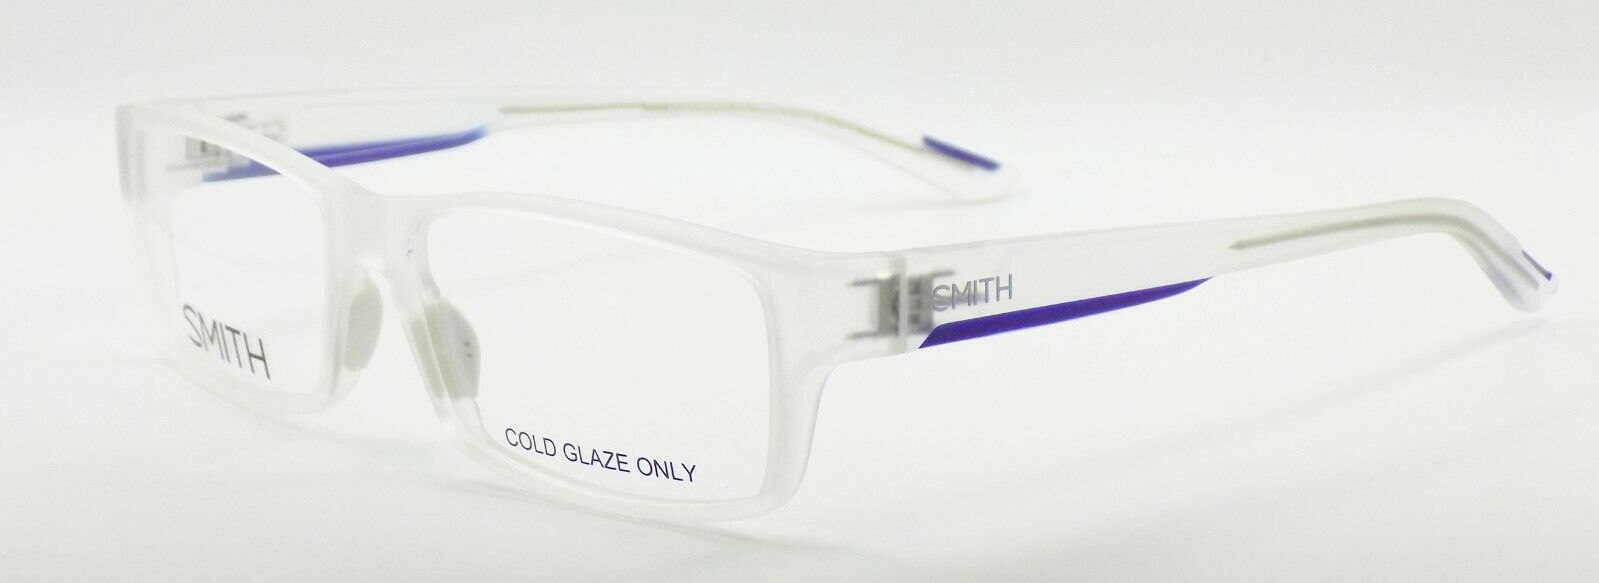 1-SMITH Broadcast XL 2KD Men's Eyeglasses Frames 56-16-140 Matte Crystal Blue-762753238924-IKSpecs